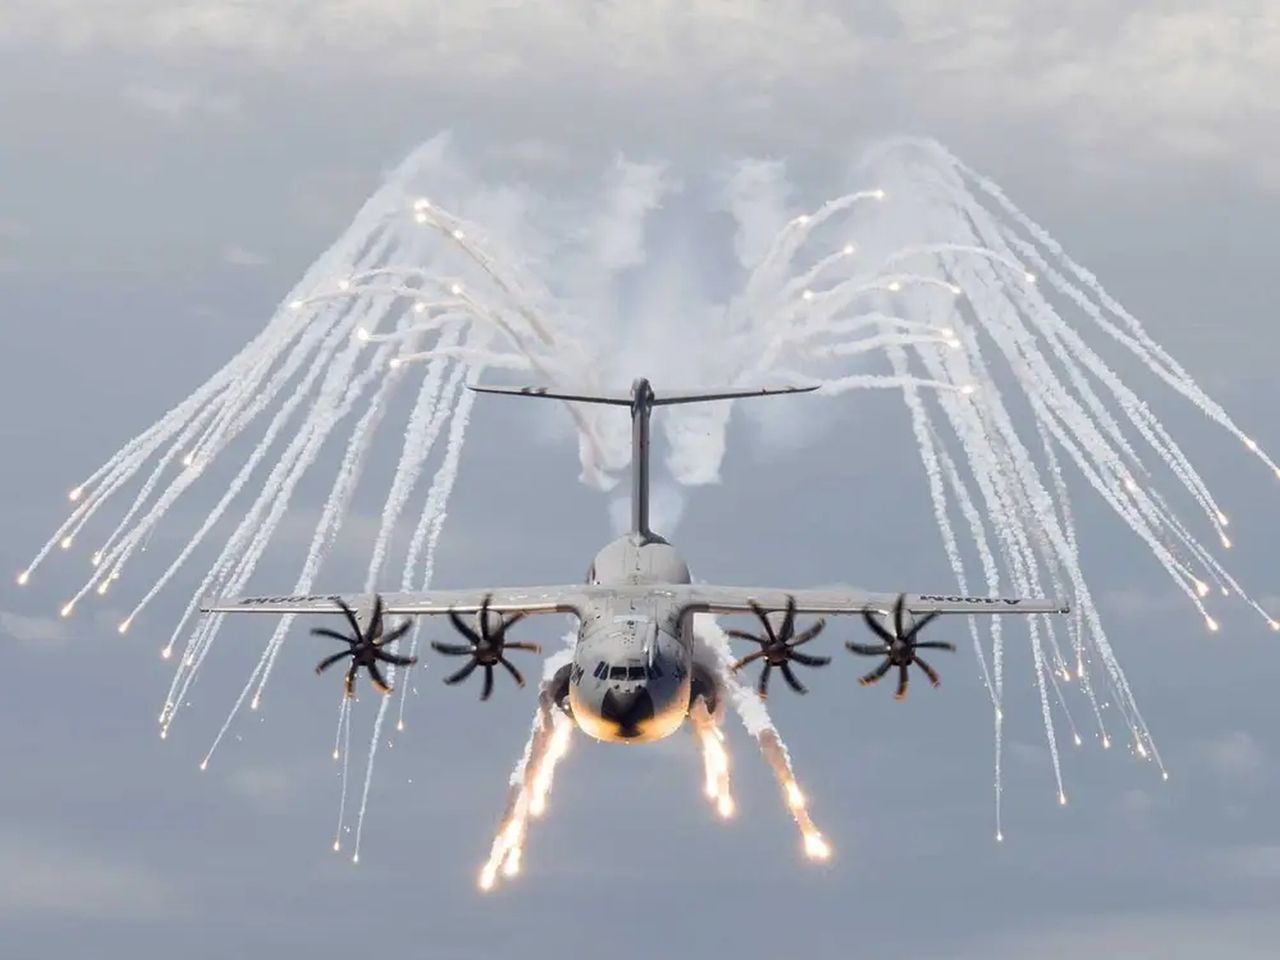 Operacja Thunder Lynx. Desant Legii Cudzoziemskiej pod nosem Putina - Airbus A400M - samolot, z którego skakali francuscy spadochroniarze